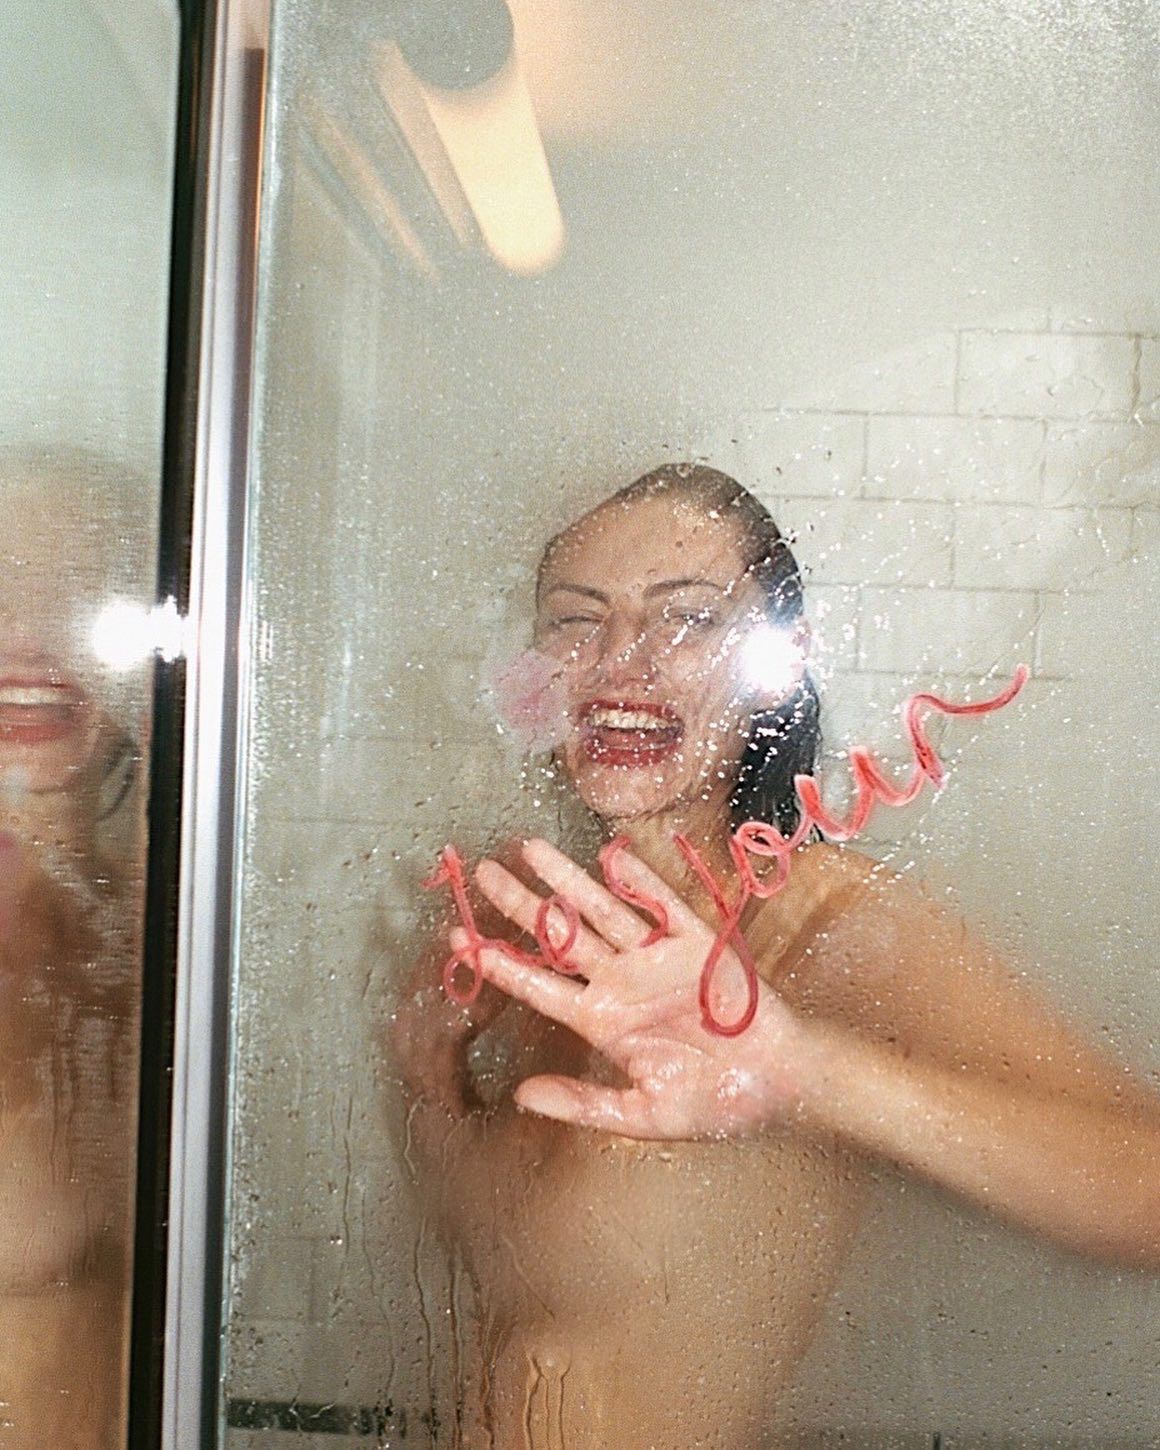 Phoebe Tonkin Nude & Sexy Collection (144 Photos + Videos)